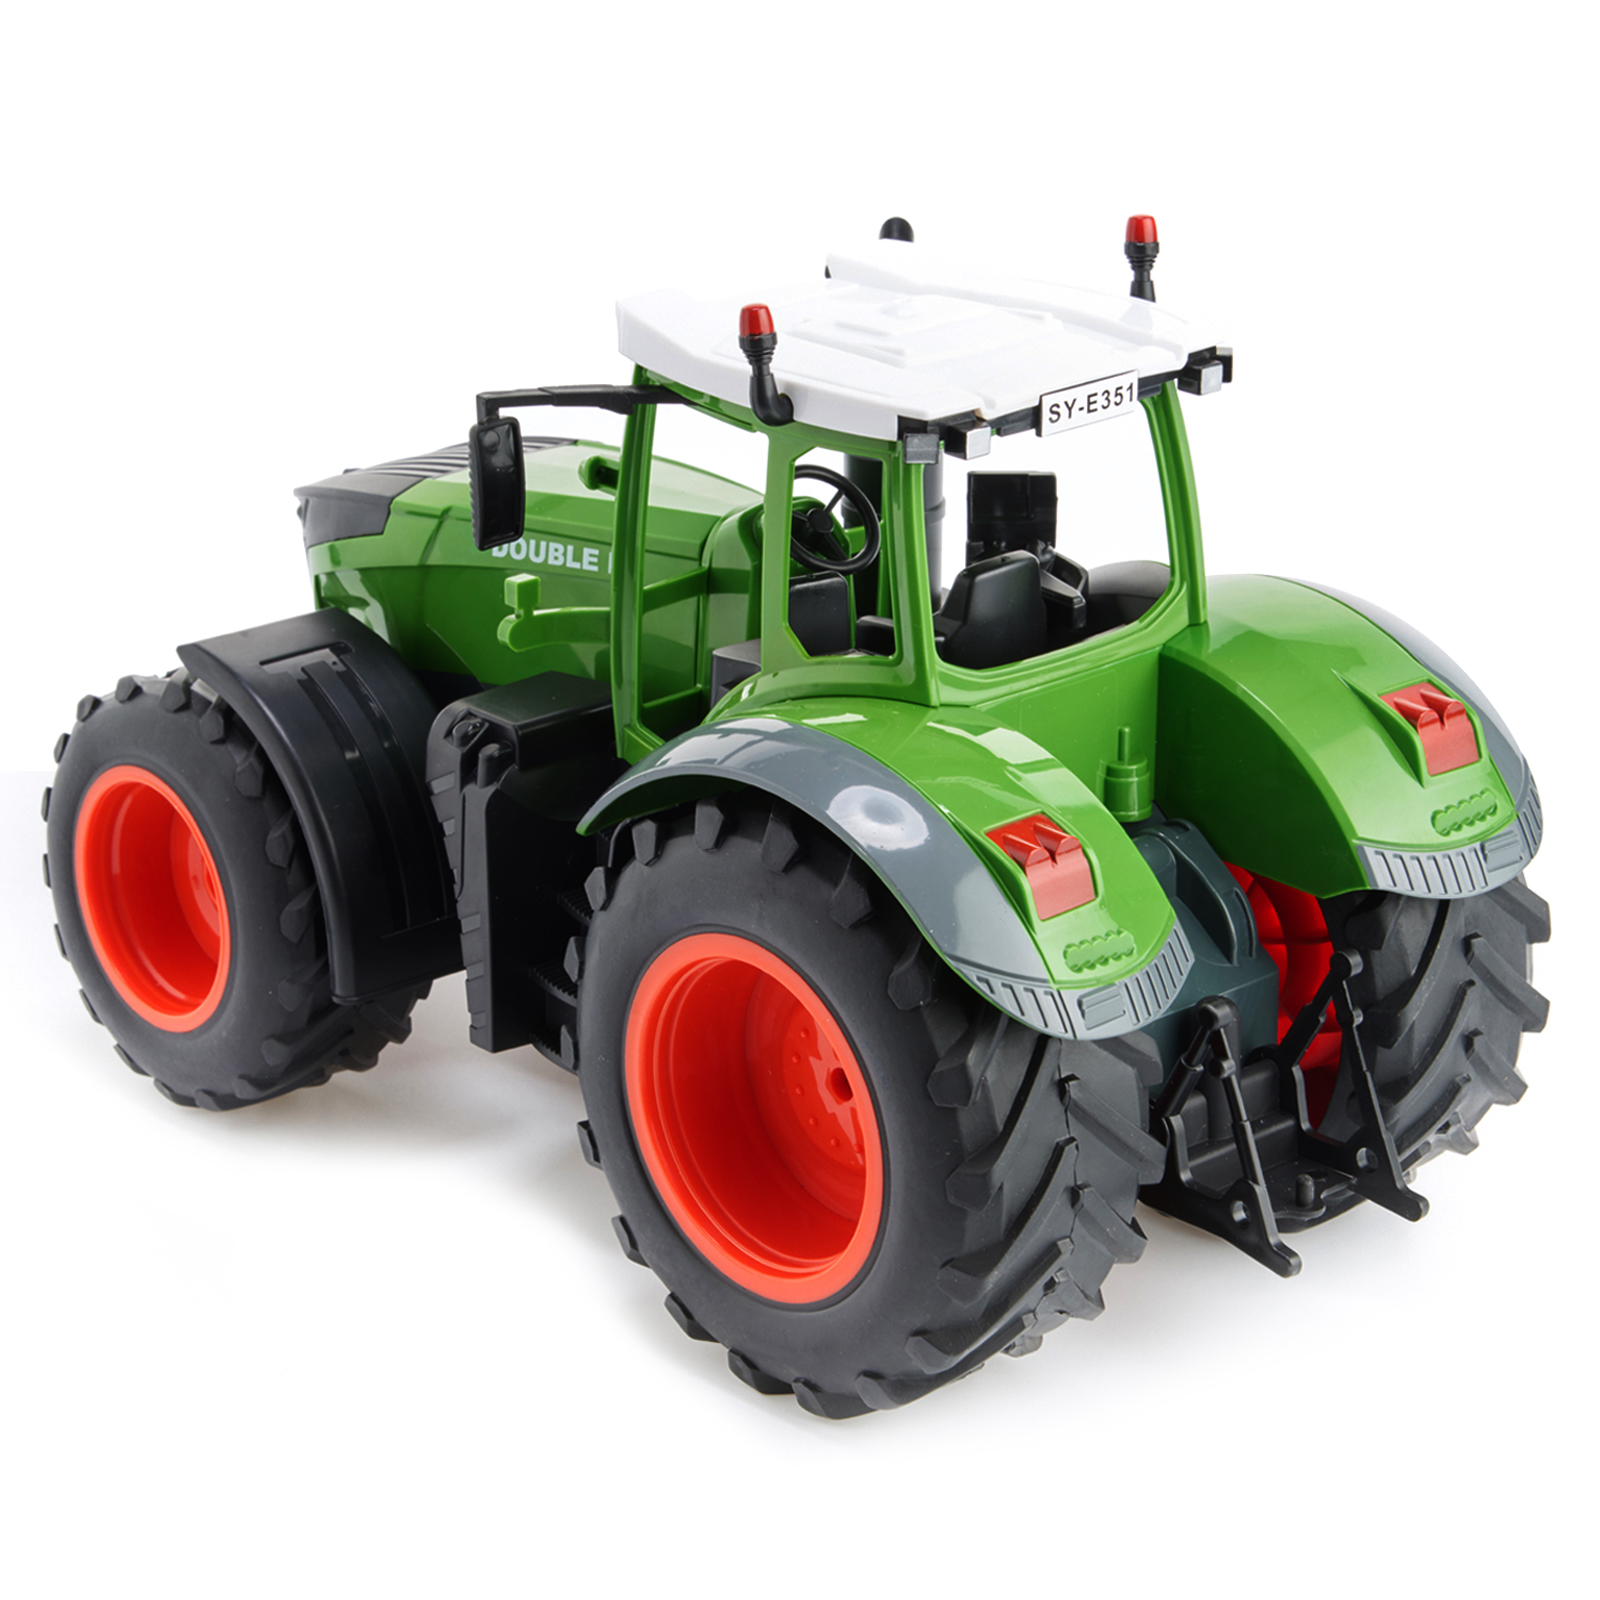 Радиоуправляемый сельскохозяйственный трактор 1:16 Double Eagle со световыми и звуковыми эффектами / E351-003